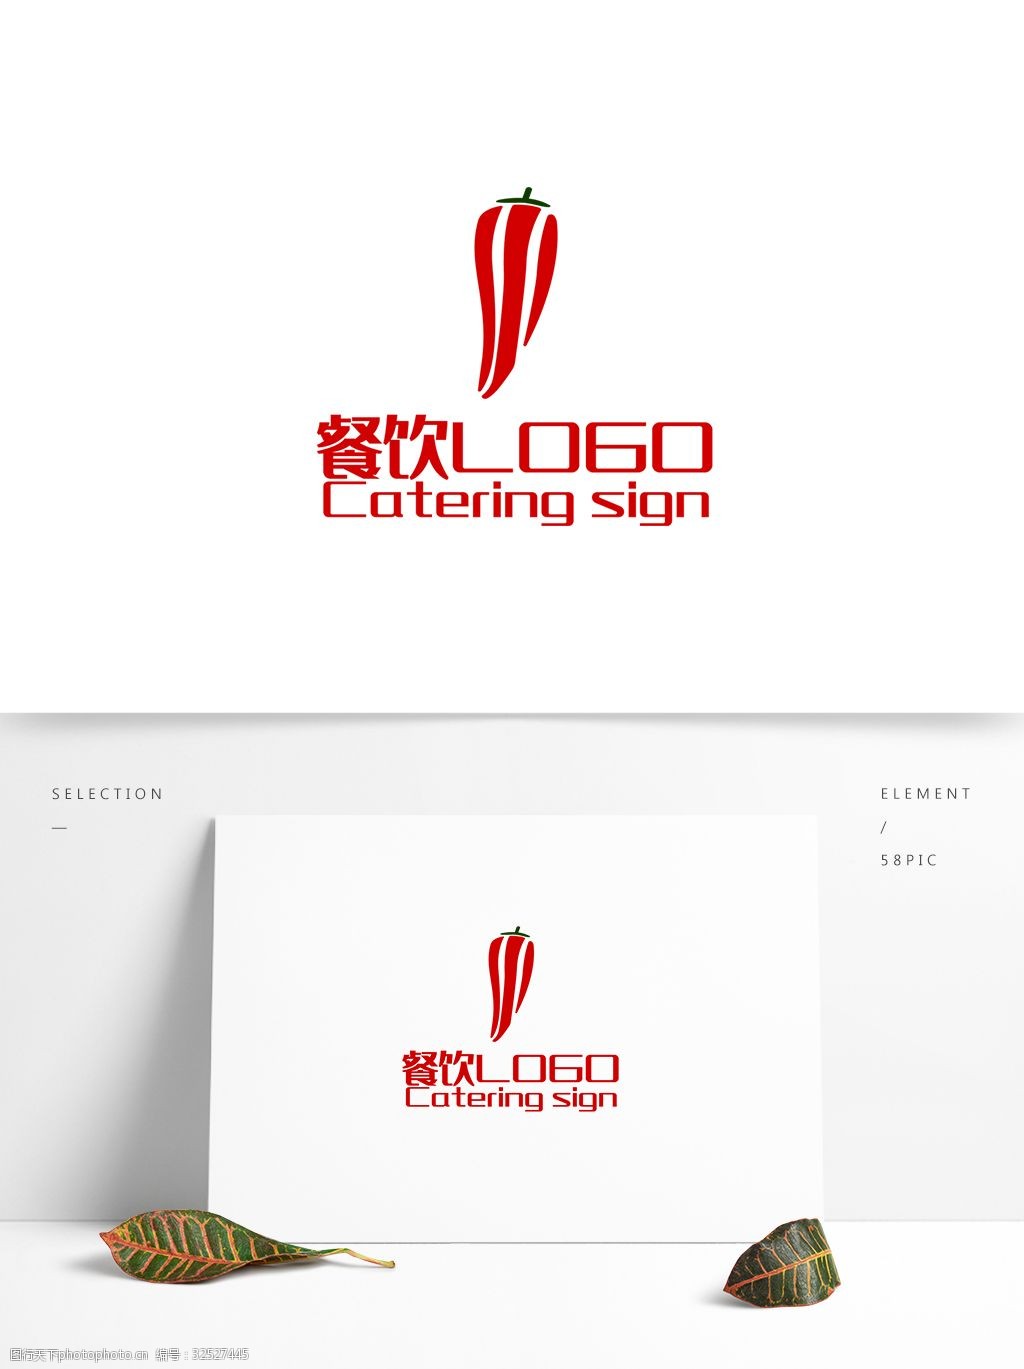 原创创意辣椒川字设计餐饮餐厅logo标志